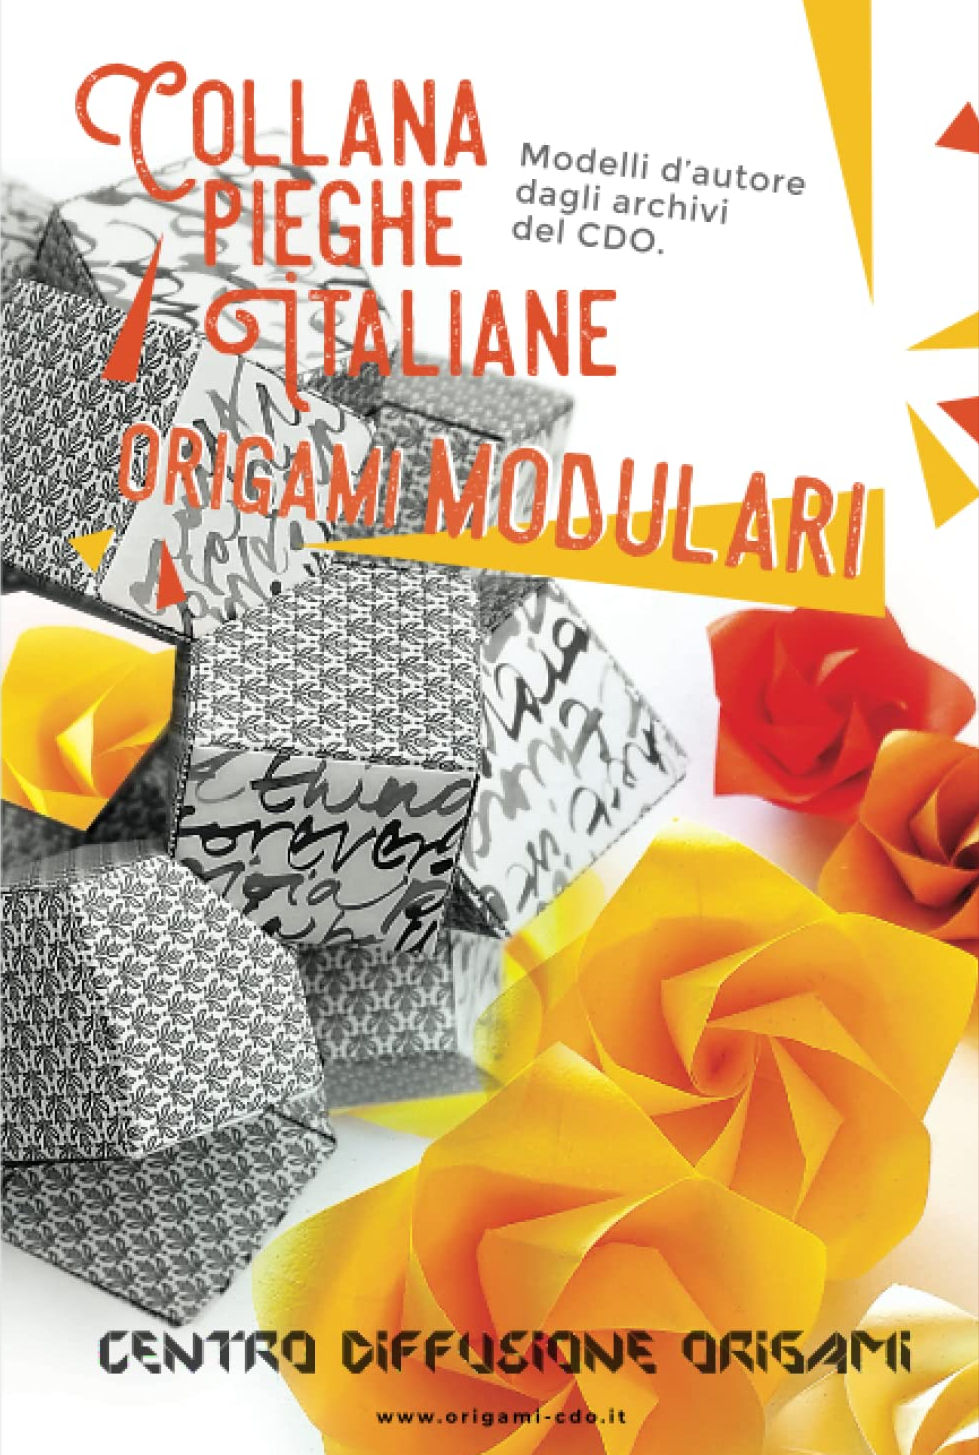 Collana pieghe Italiane - origami MODULARI : page 134.